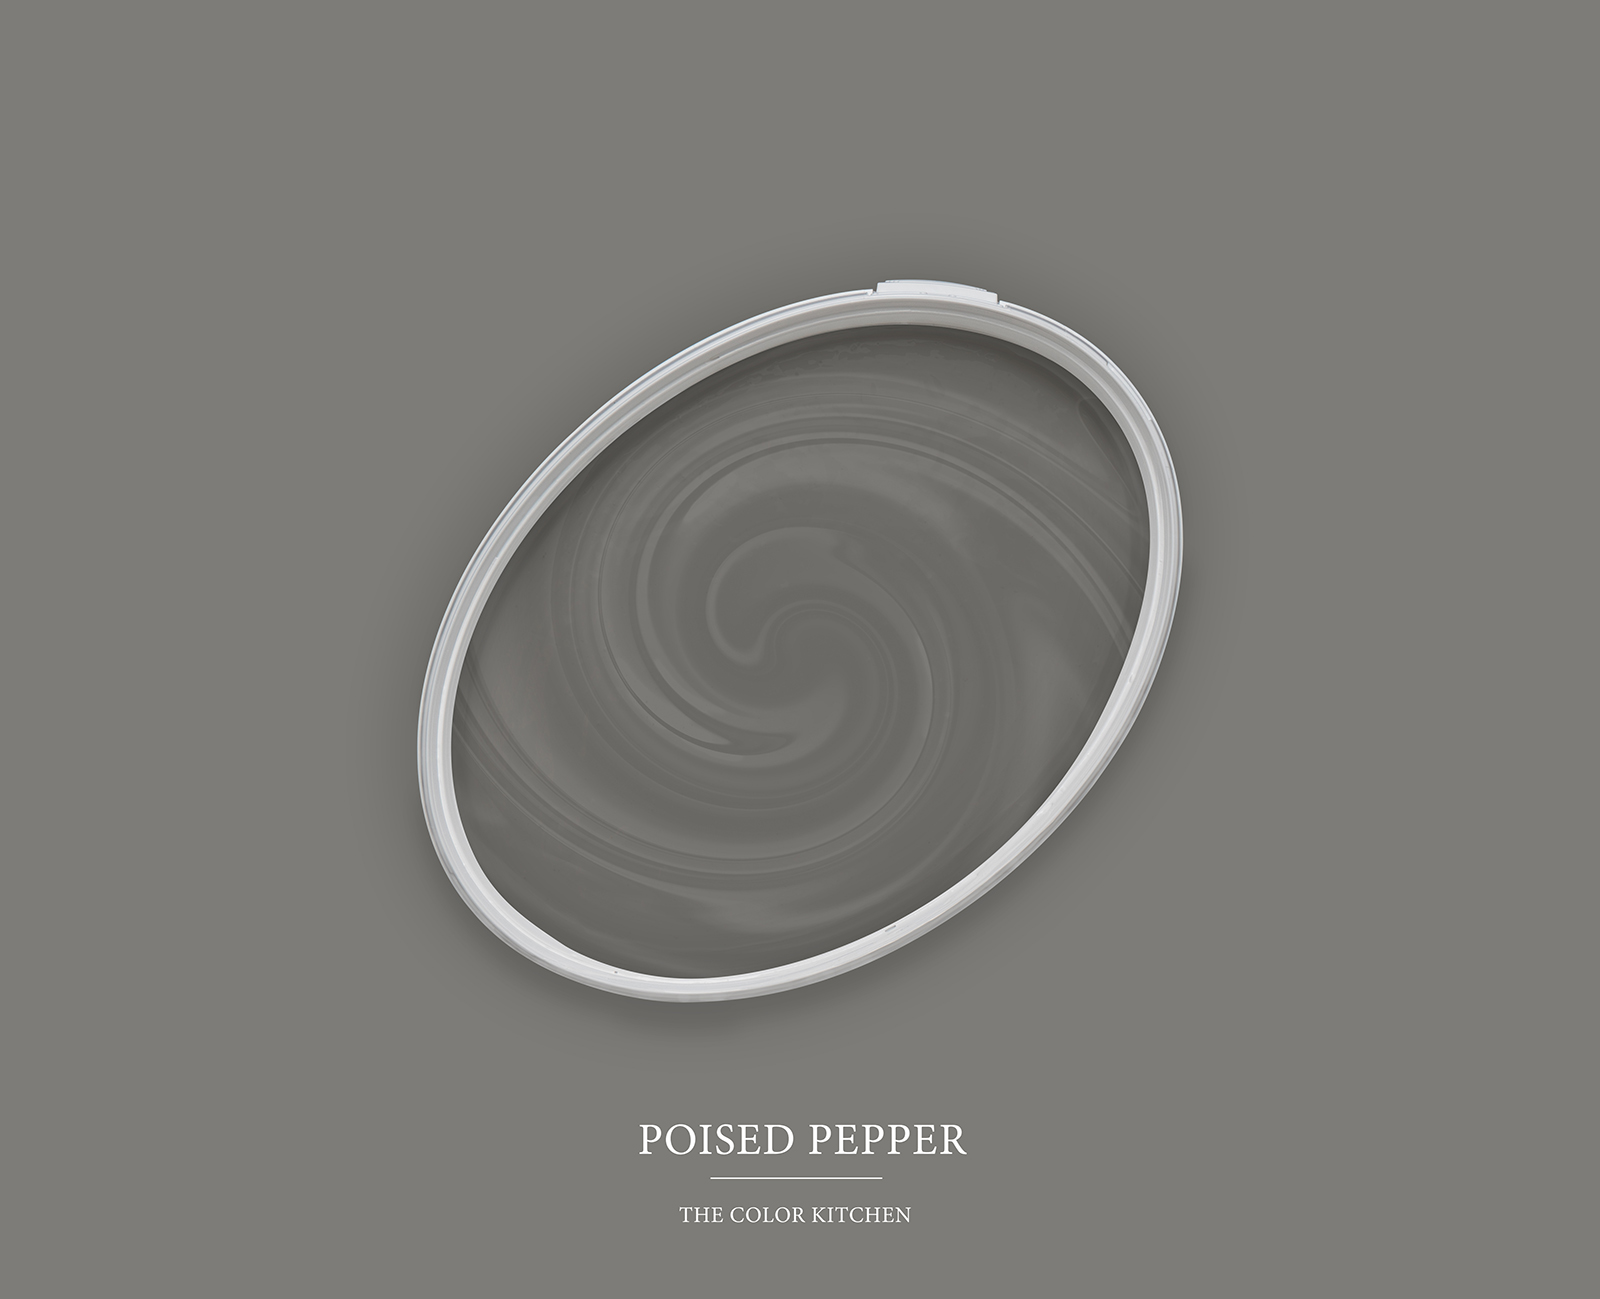 Wandfarbe in dunklem Grau »Poised Pepper« TCK1013 – 2,5 Liter
